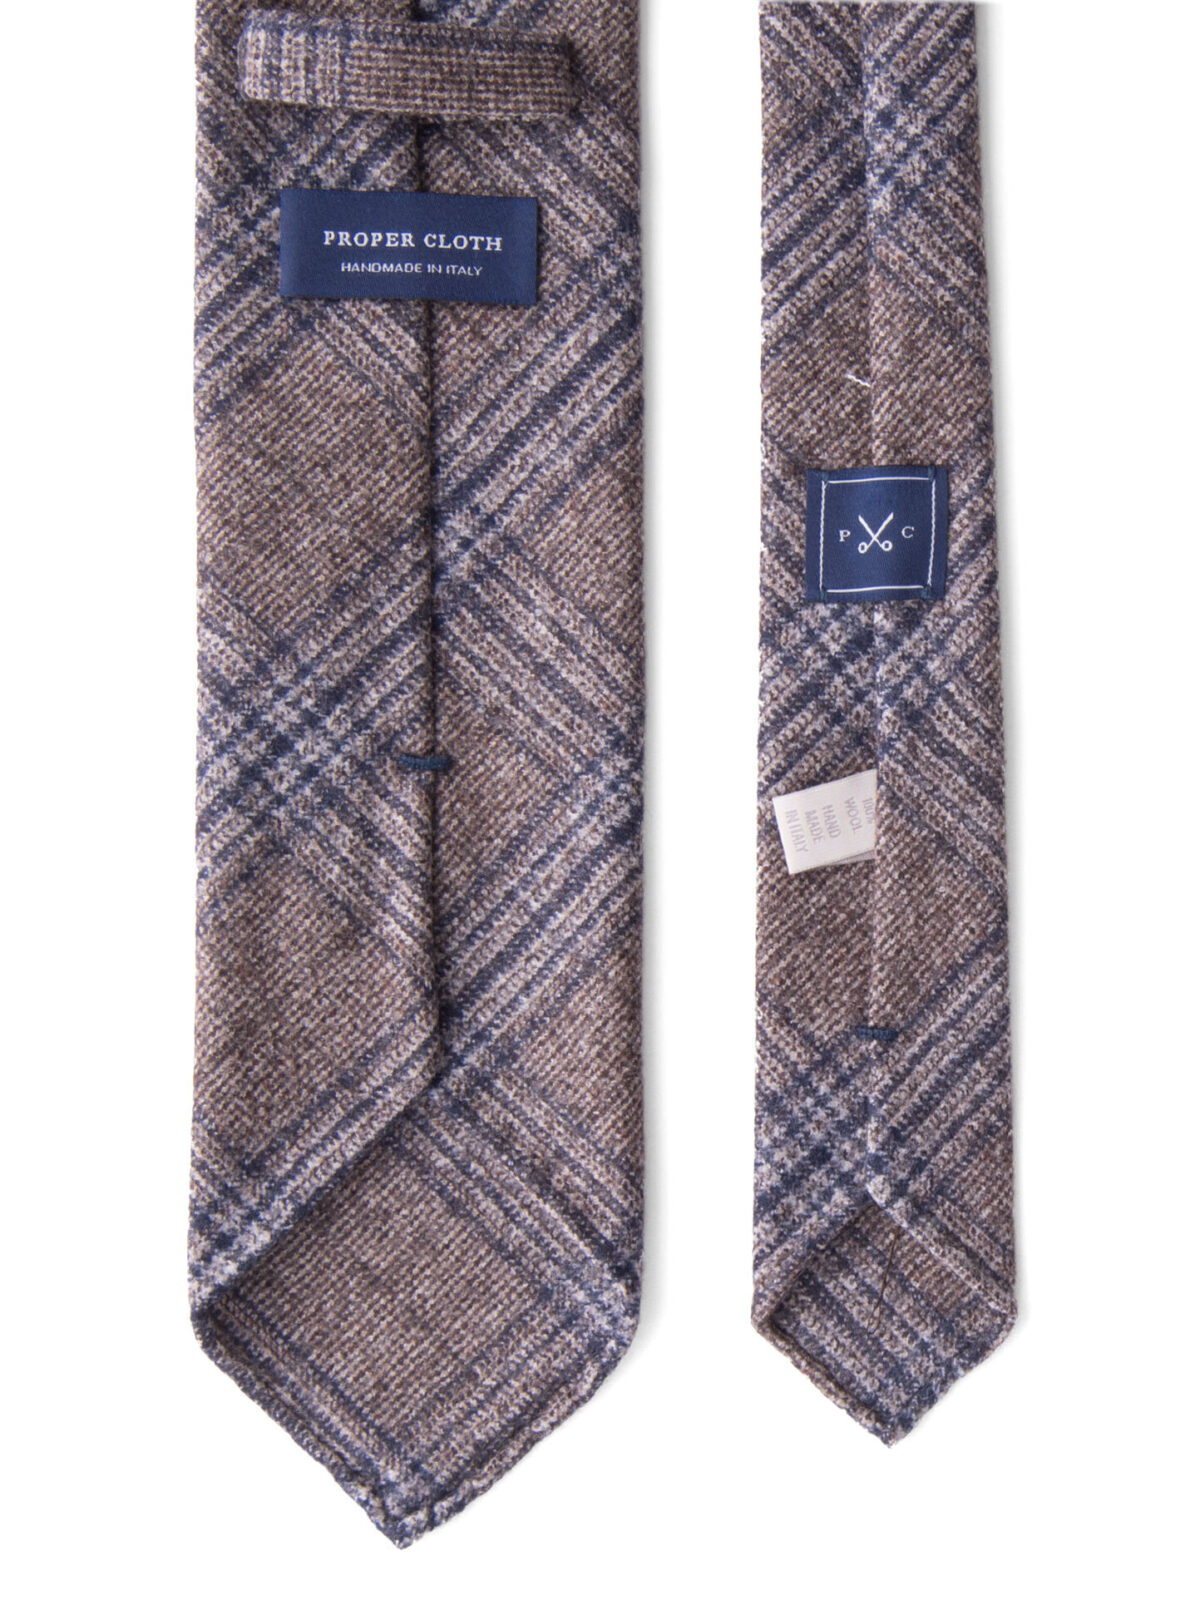 Beige and Navy Wool Plaid Tie